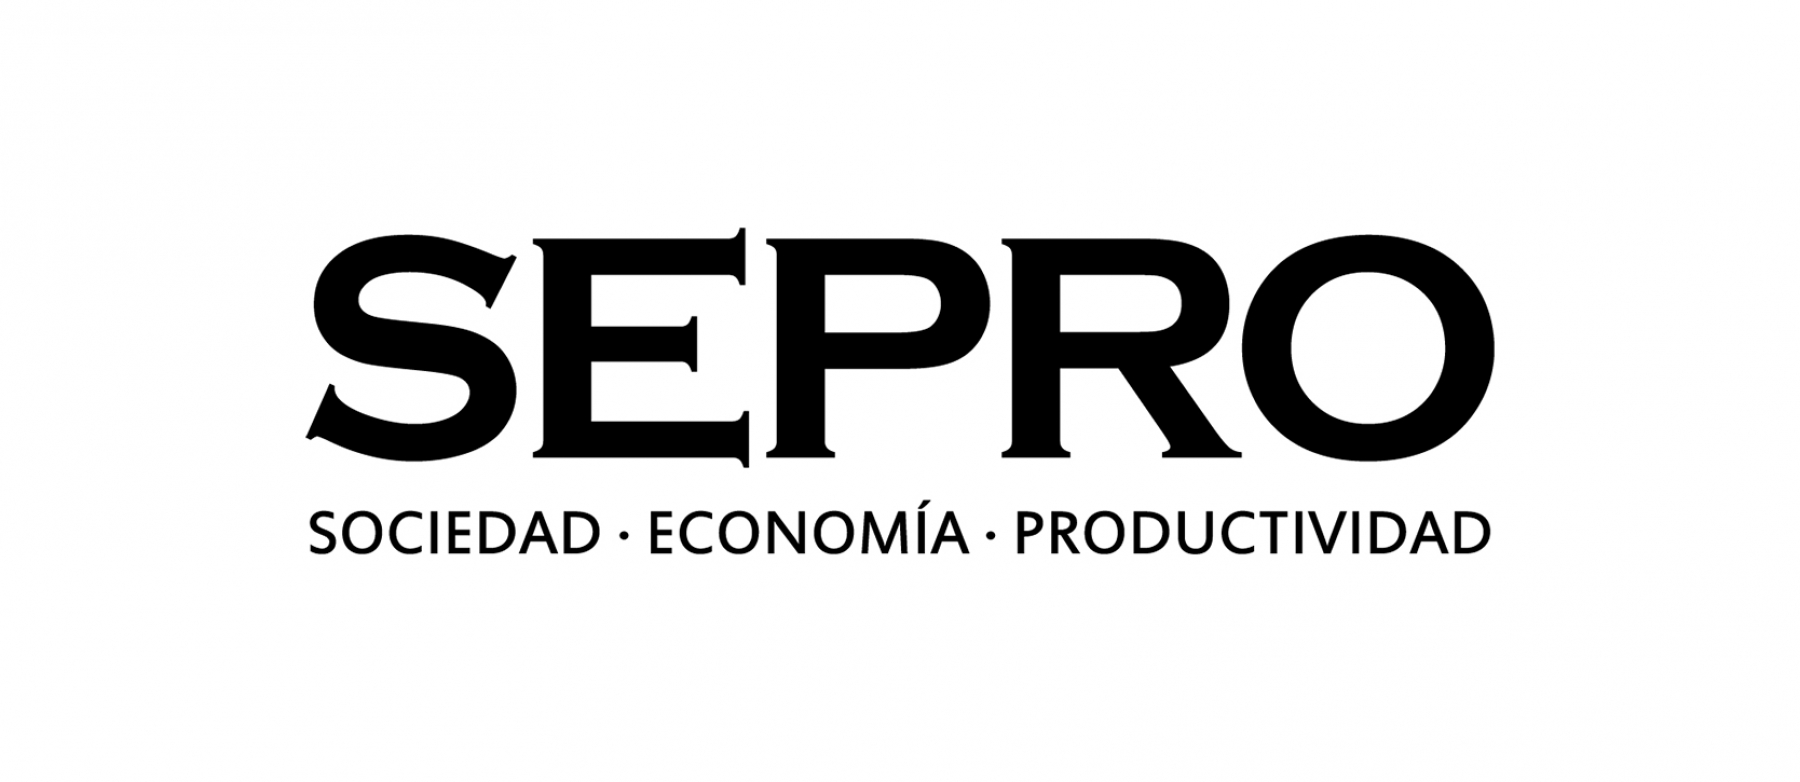 SEPRO desarrolla siete proyectos enfocados en la línea de investigación Logística